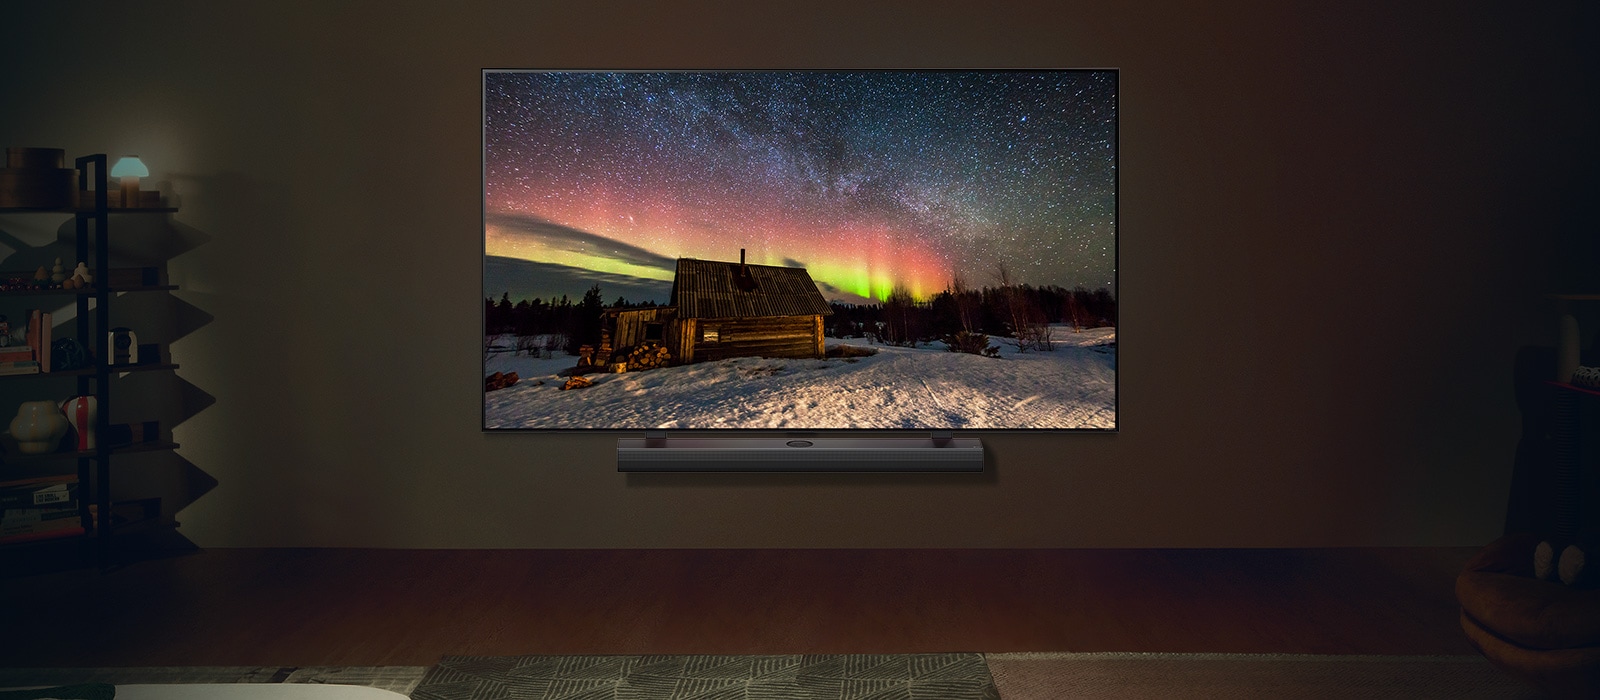 Gece modern bir yaşam alanında LG TV ve LG Soundbar. Kuzey ışıklarını gösteren ekran görüntüsü ideal parlaklık seviyelerinde görüntüleniyor.